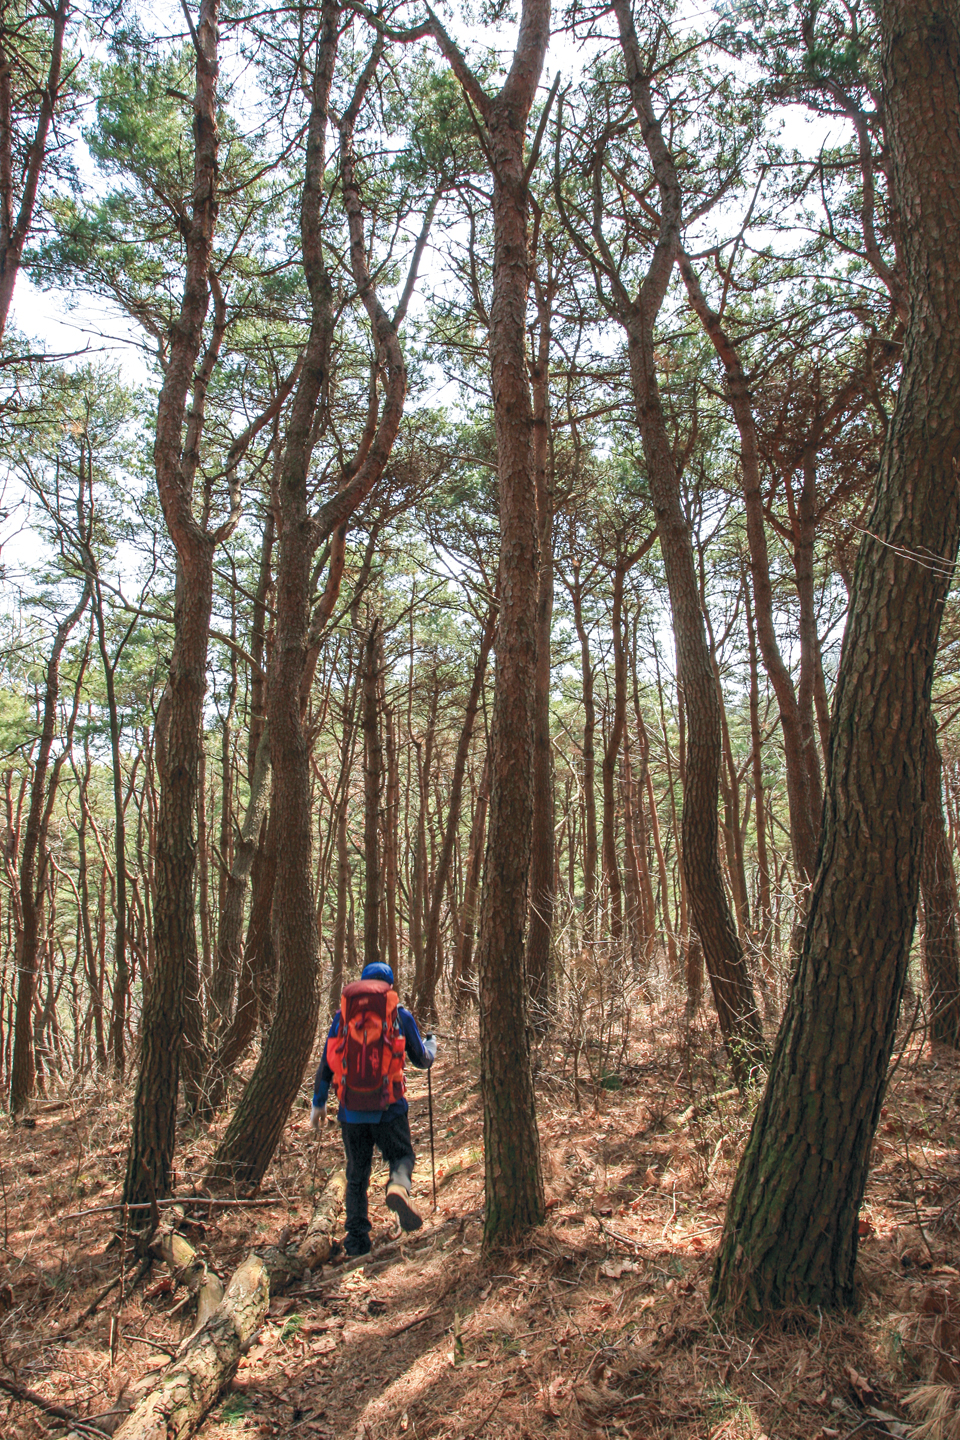 용각산으로 가는 능선 길은 아름드리 소나무 숲으로 호젓해서 좋다.